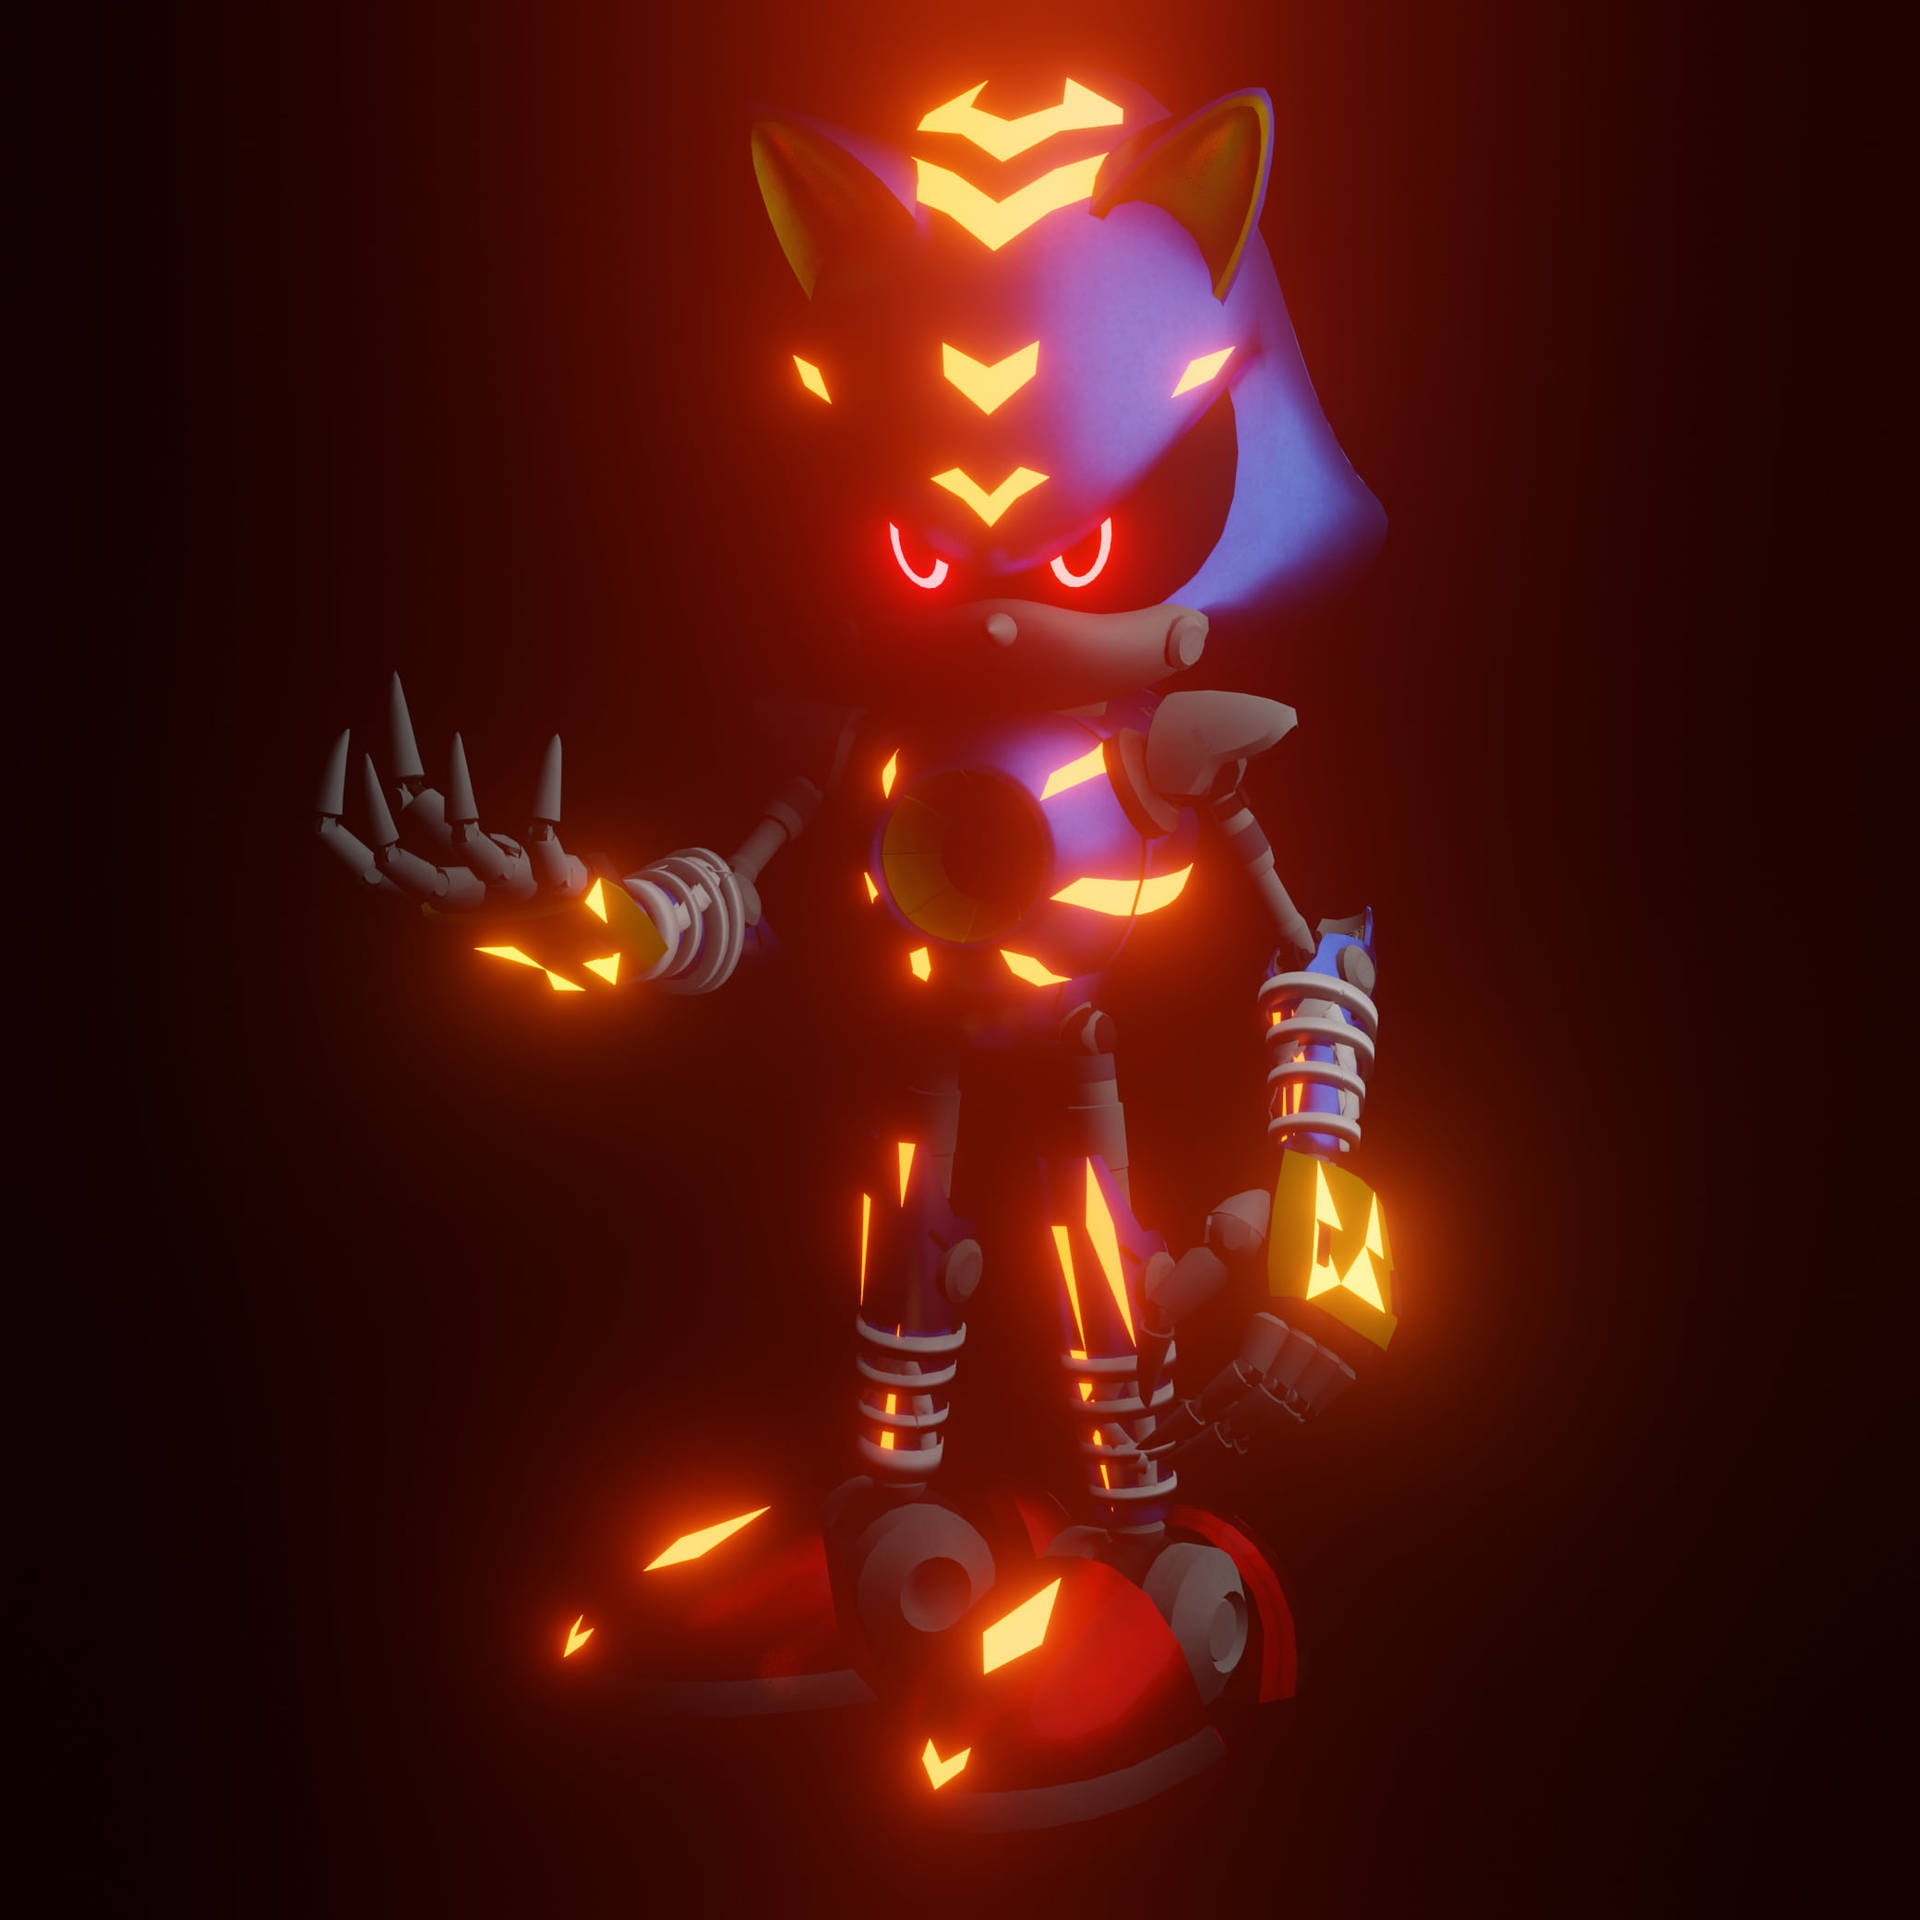 Metal Sonic Fiery Body Background